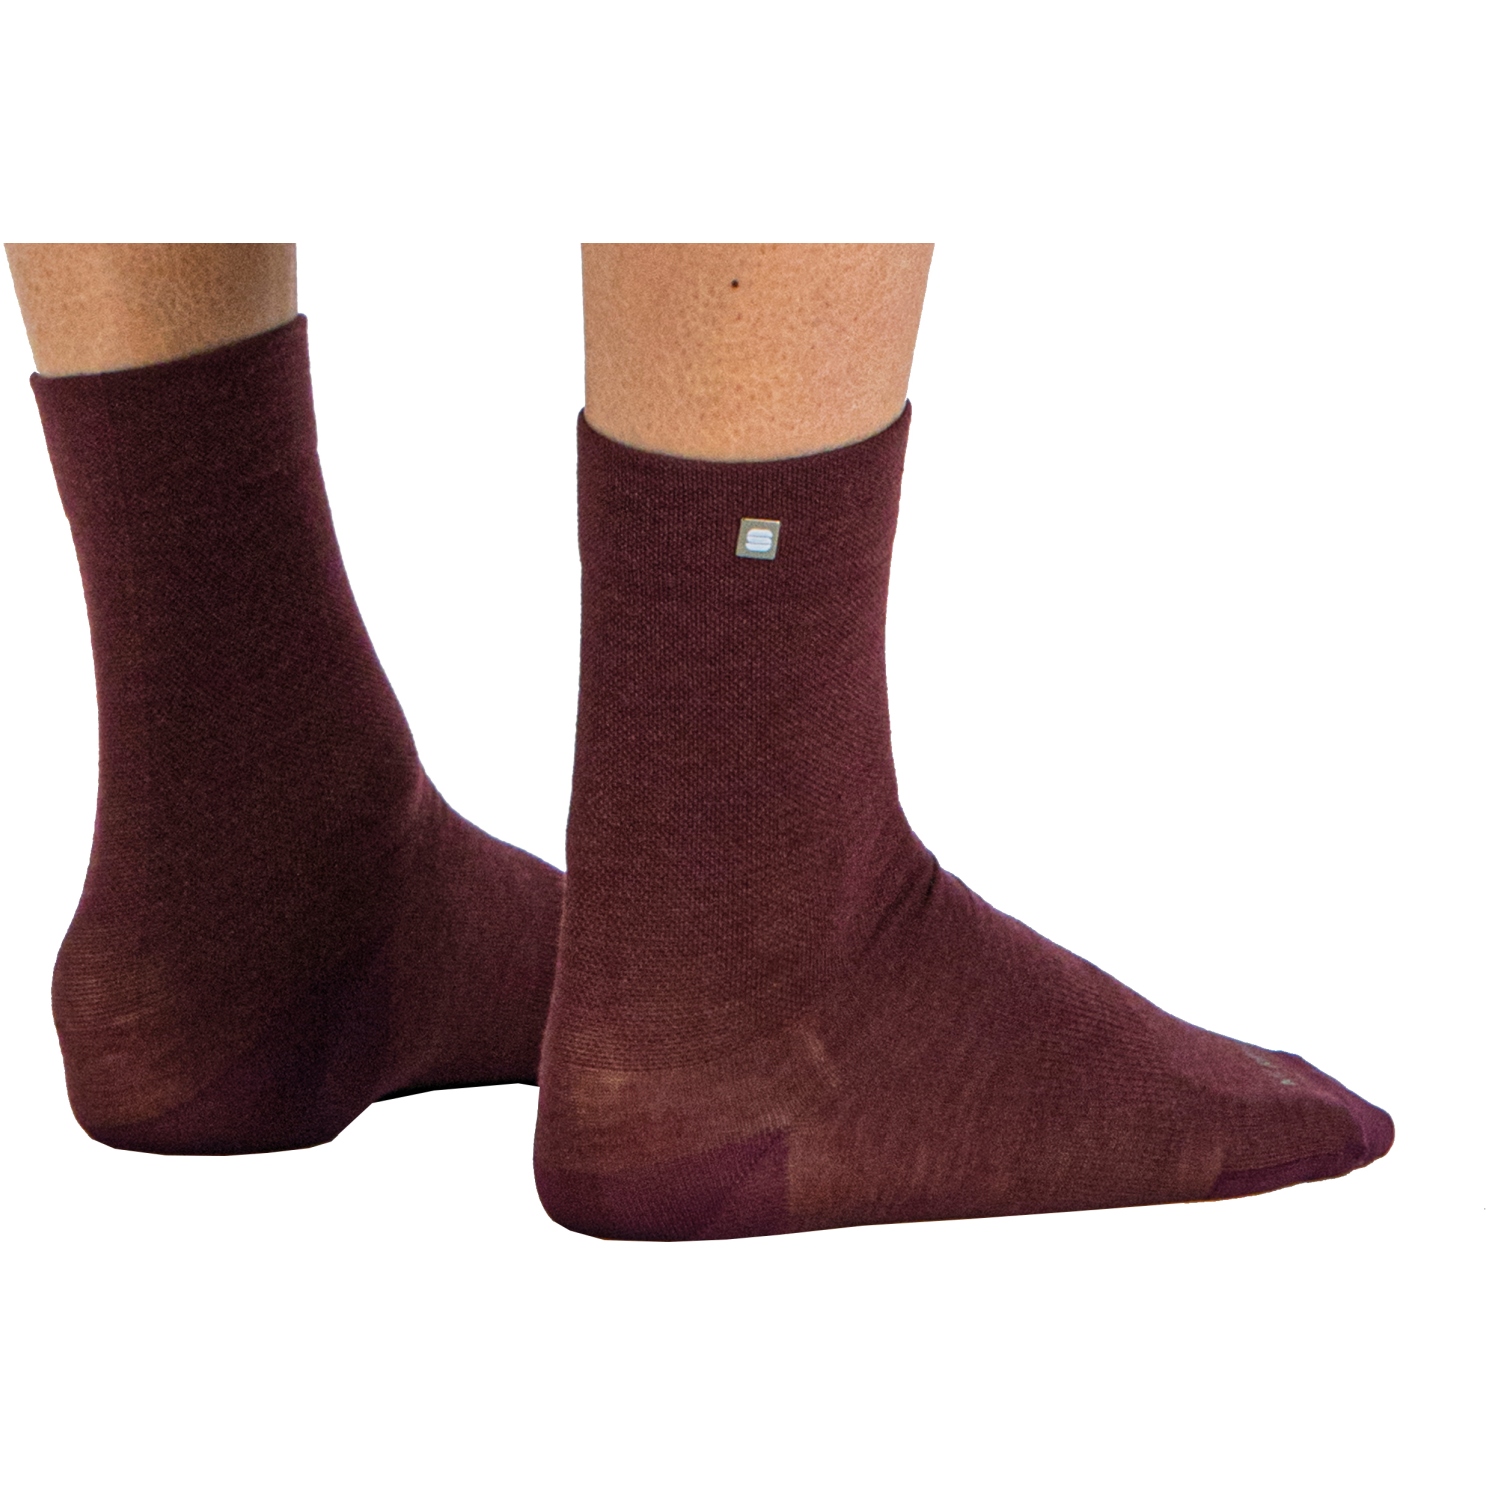 Produktbild von Sportful Matchy Wool Damen Socken - 605 Red Wine